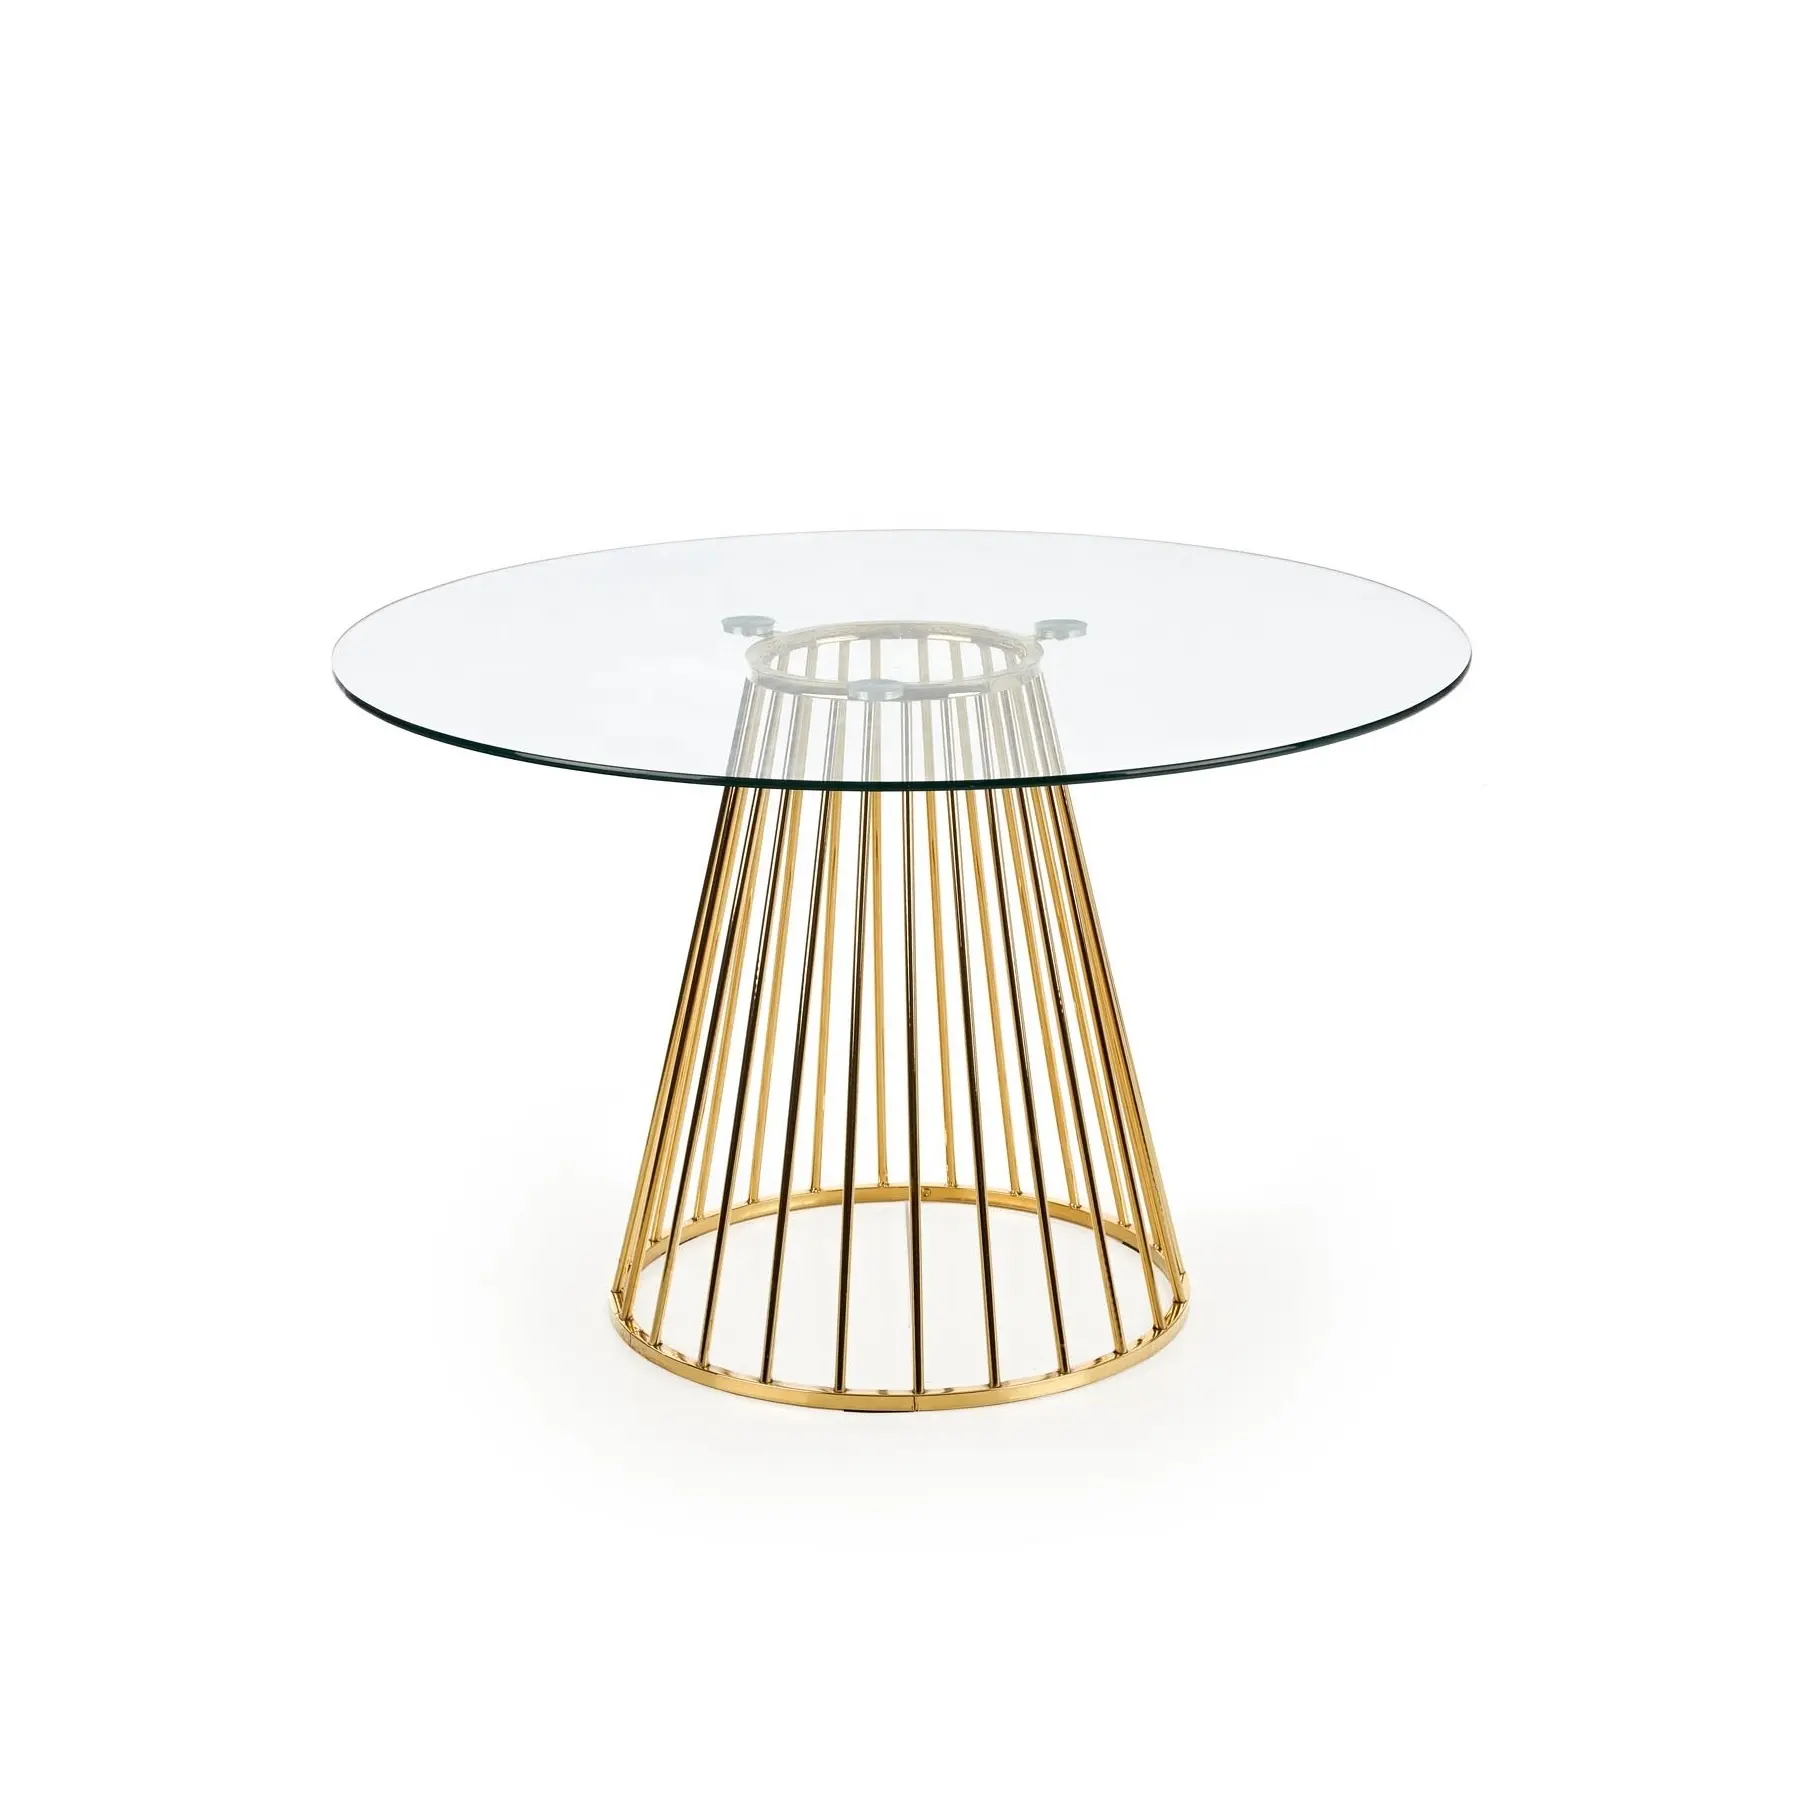 Moderno único elegante claro redondo vidrio oro piernas mesa de comedor de muebles de Metal